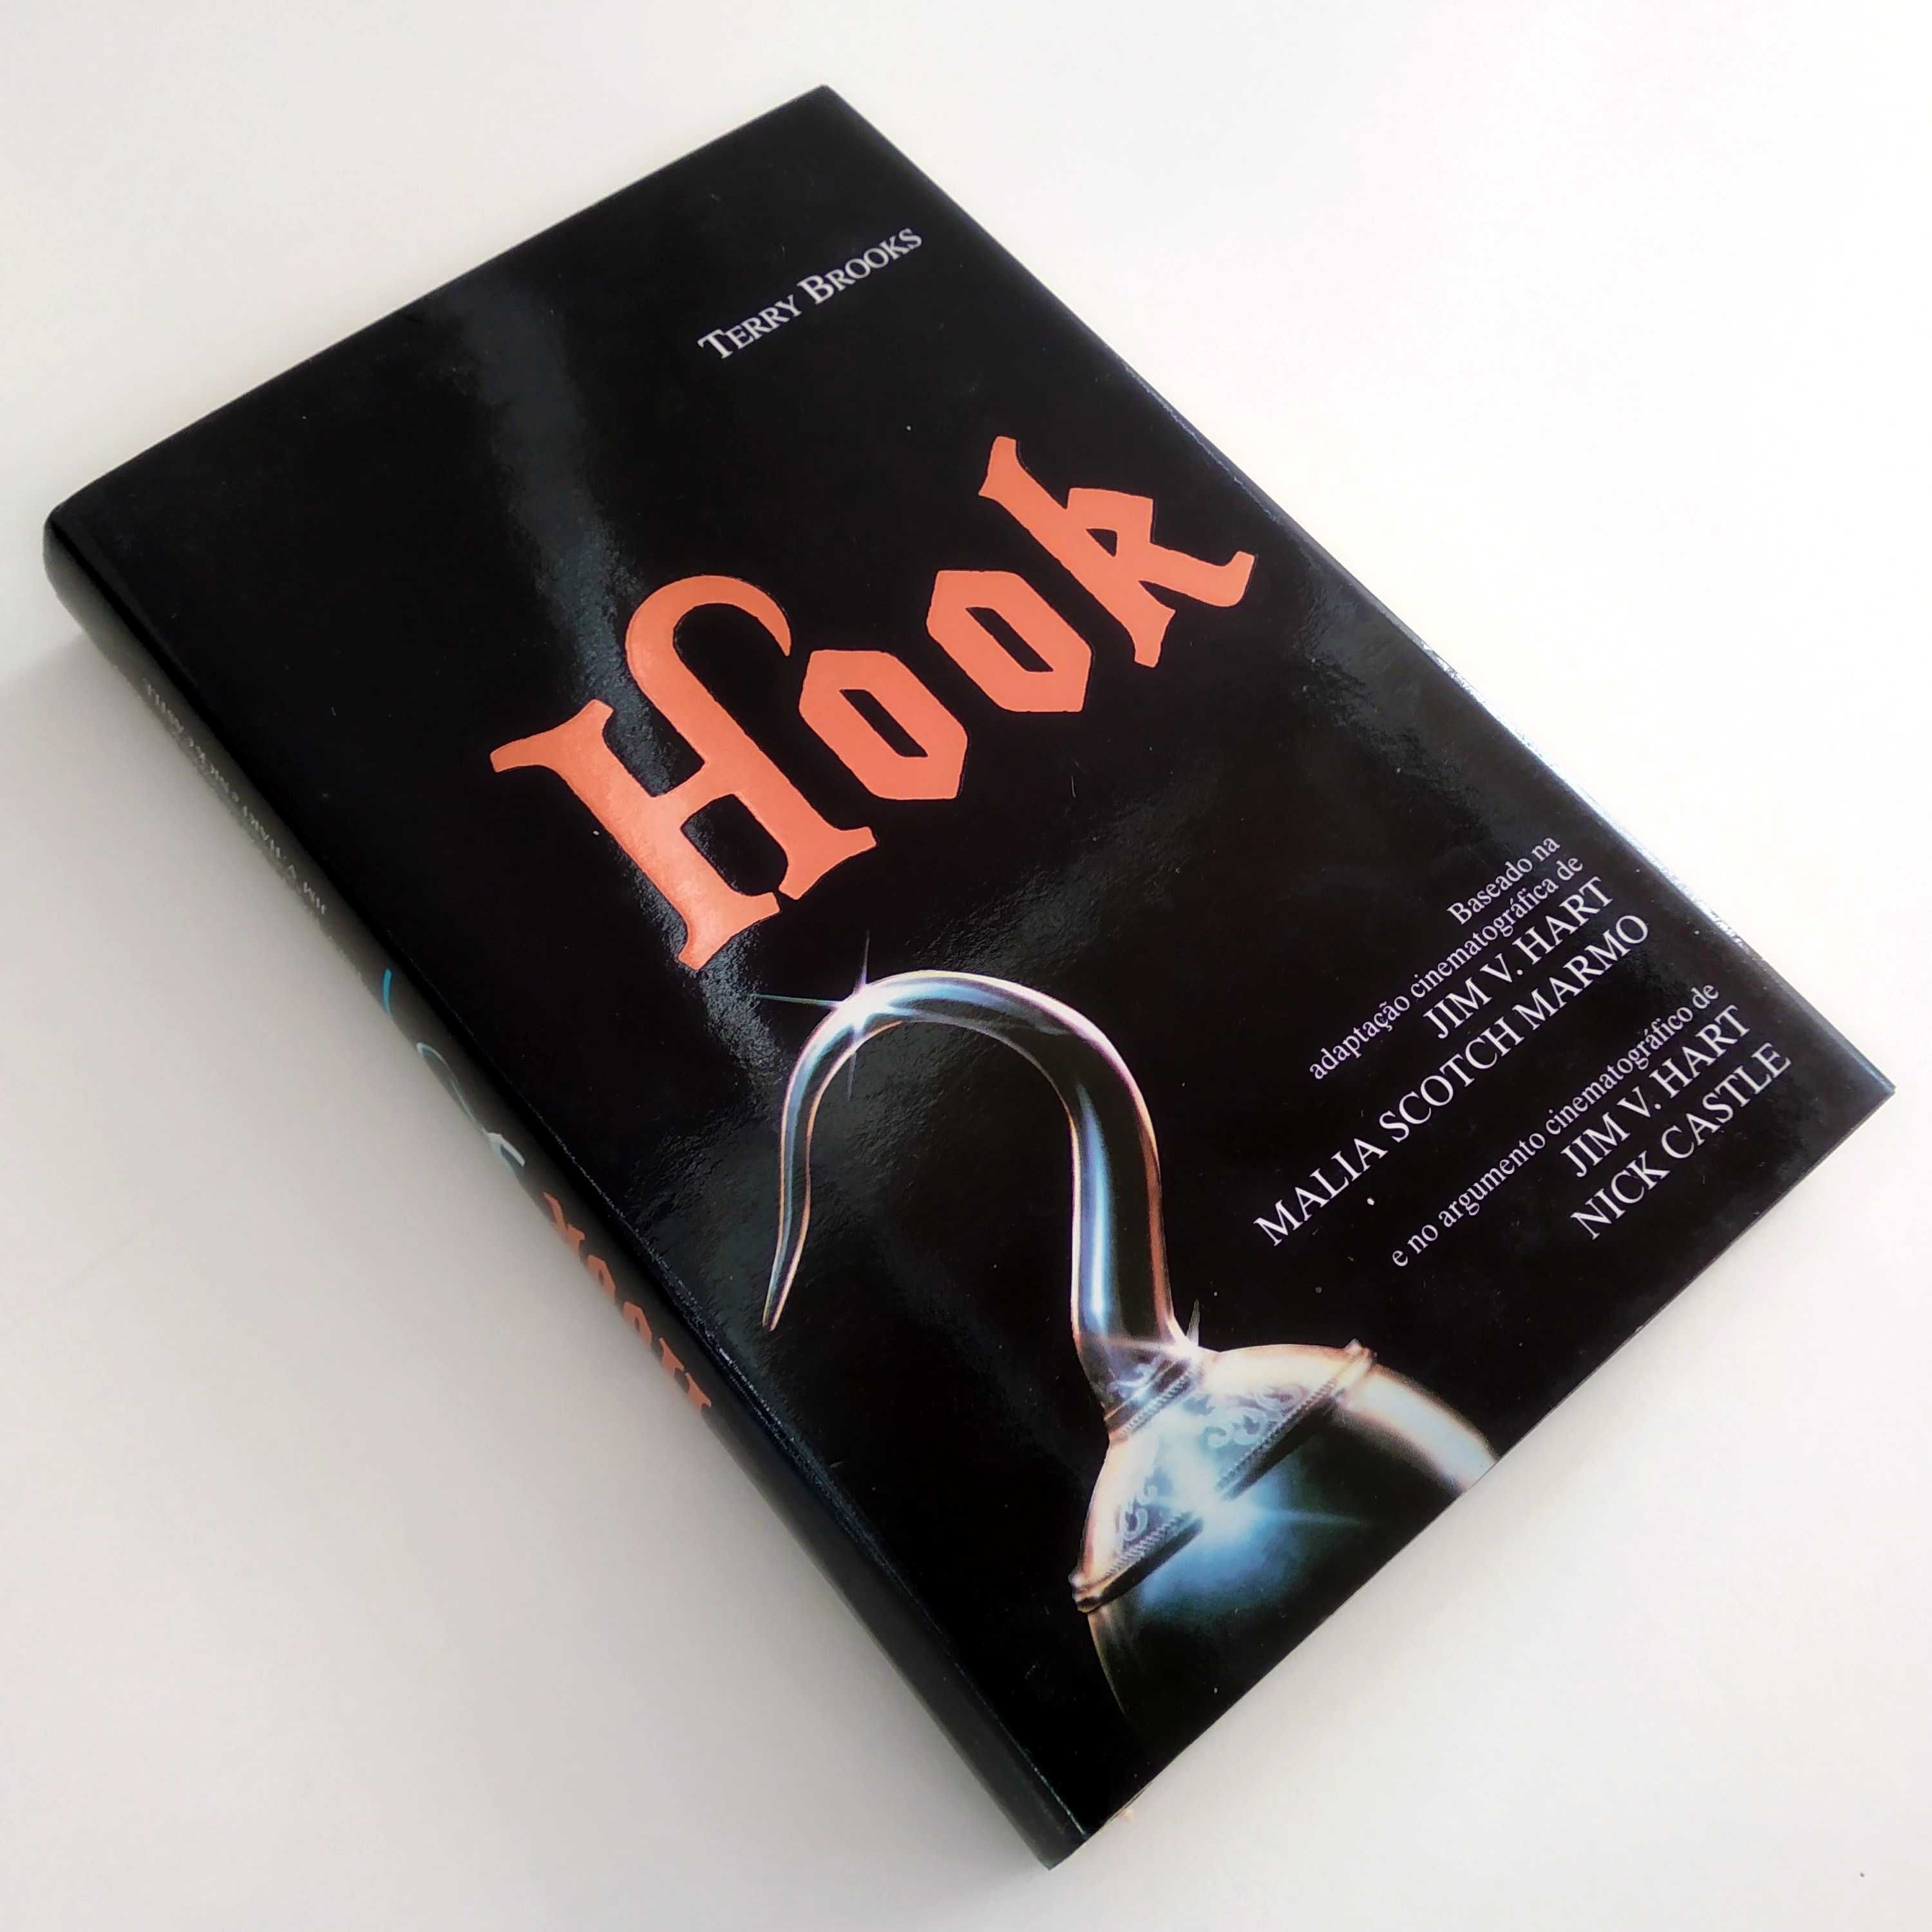 HOOK - Terry Brooks (Cículo de Leitores - Edição de capa dura)